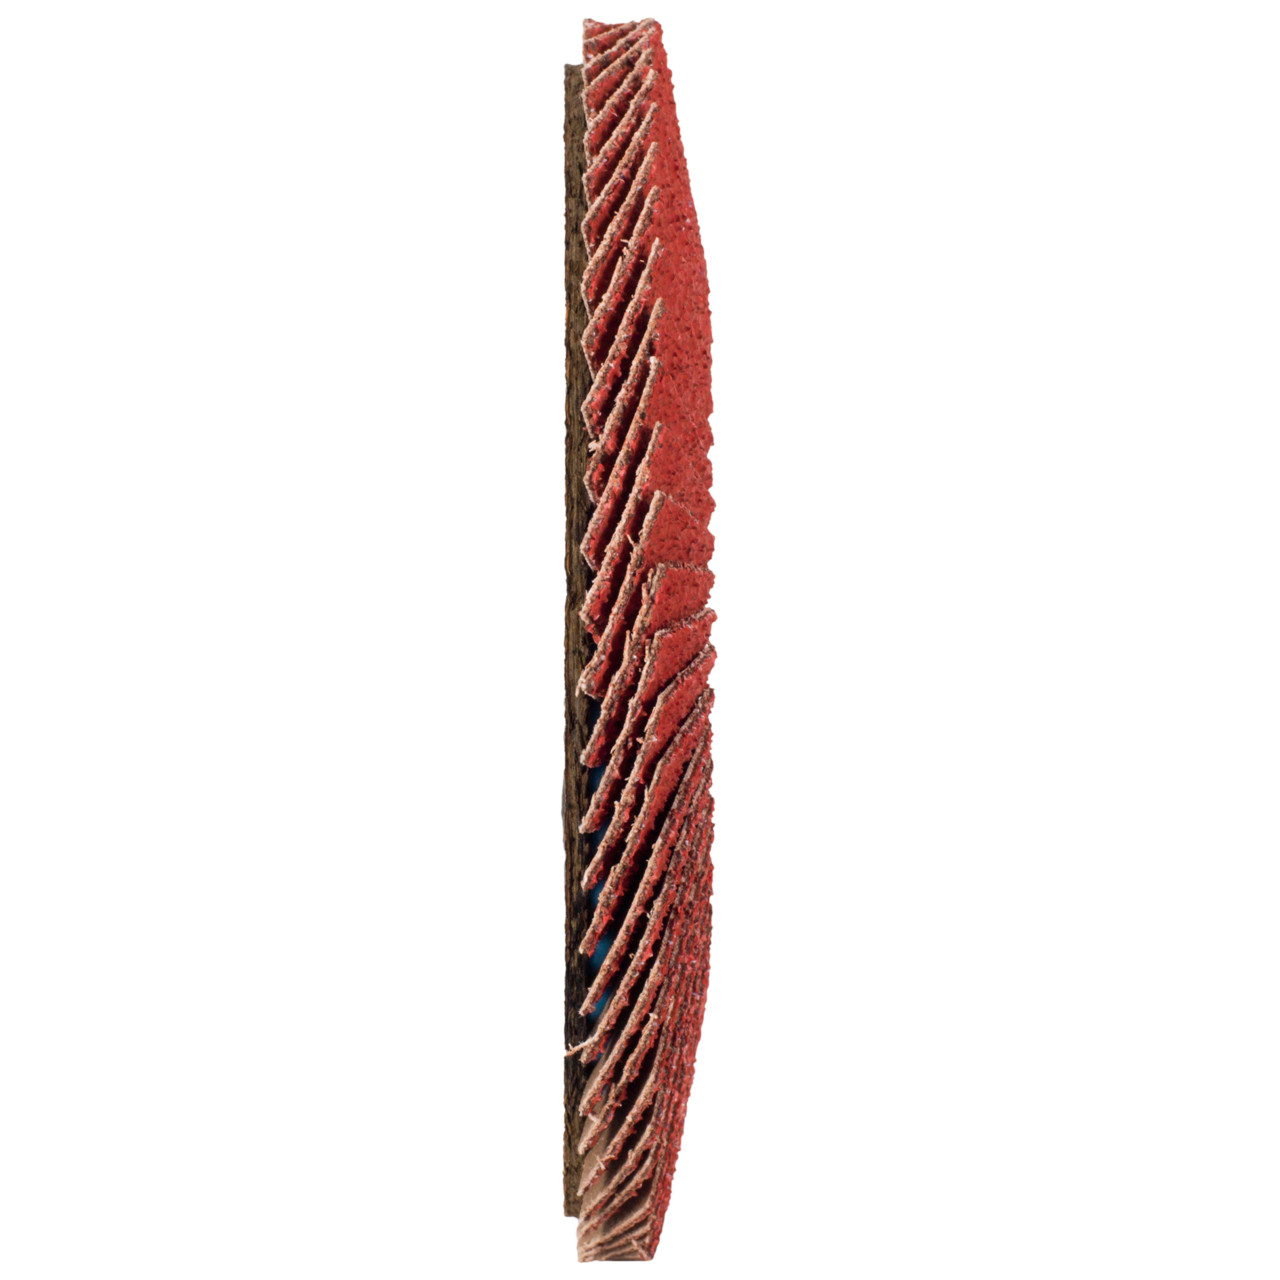 Tyrolit Rondelle à lamelles DxH 125x22,23 CERABOND Rondelle à lamelles pour acier inoxydable, P60, forme : 28A - modèle droit (modèle à corps en fibre de verre), Art. 34166176